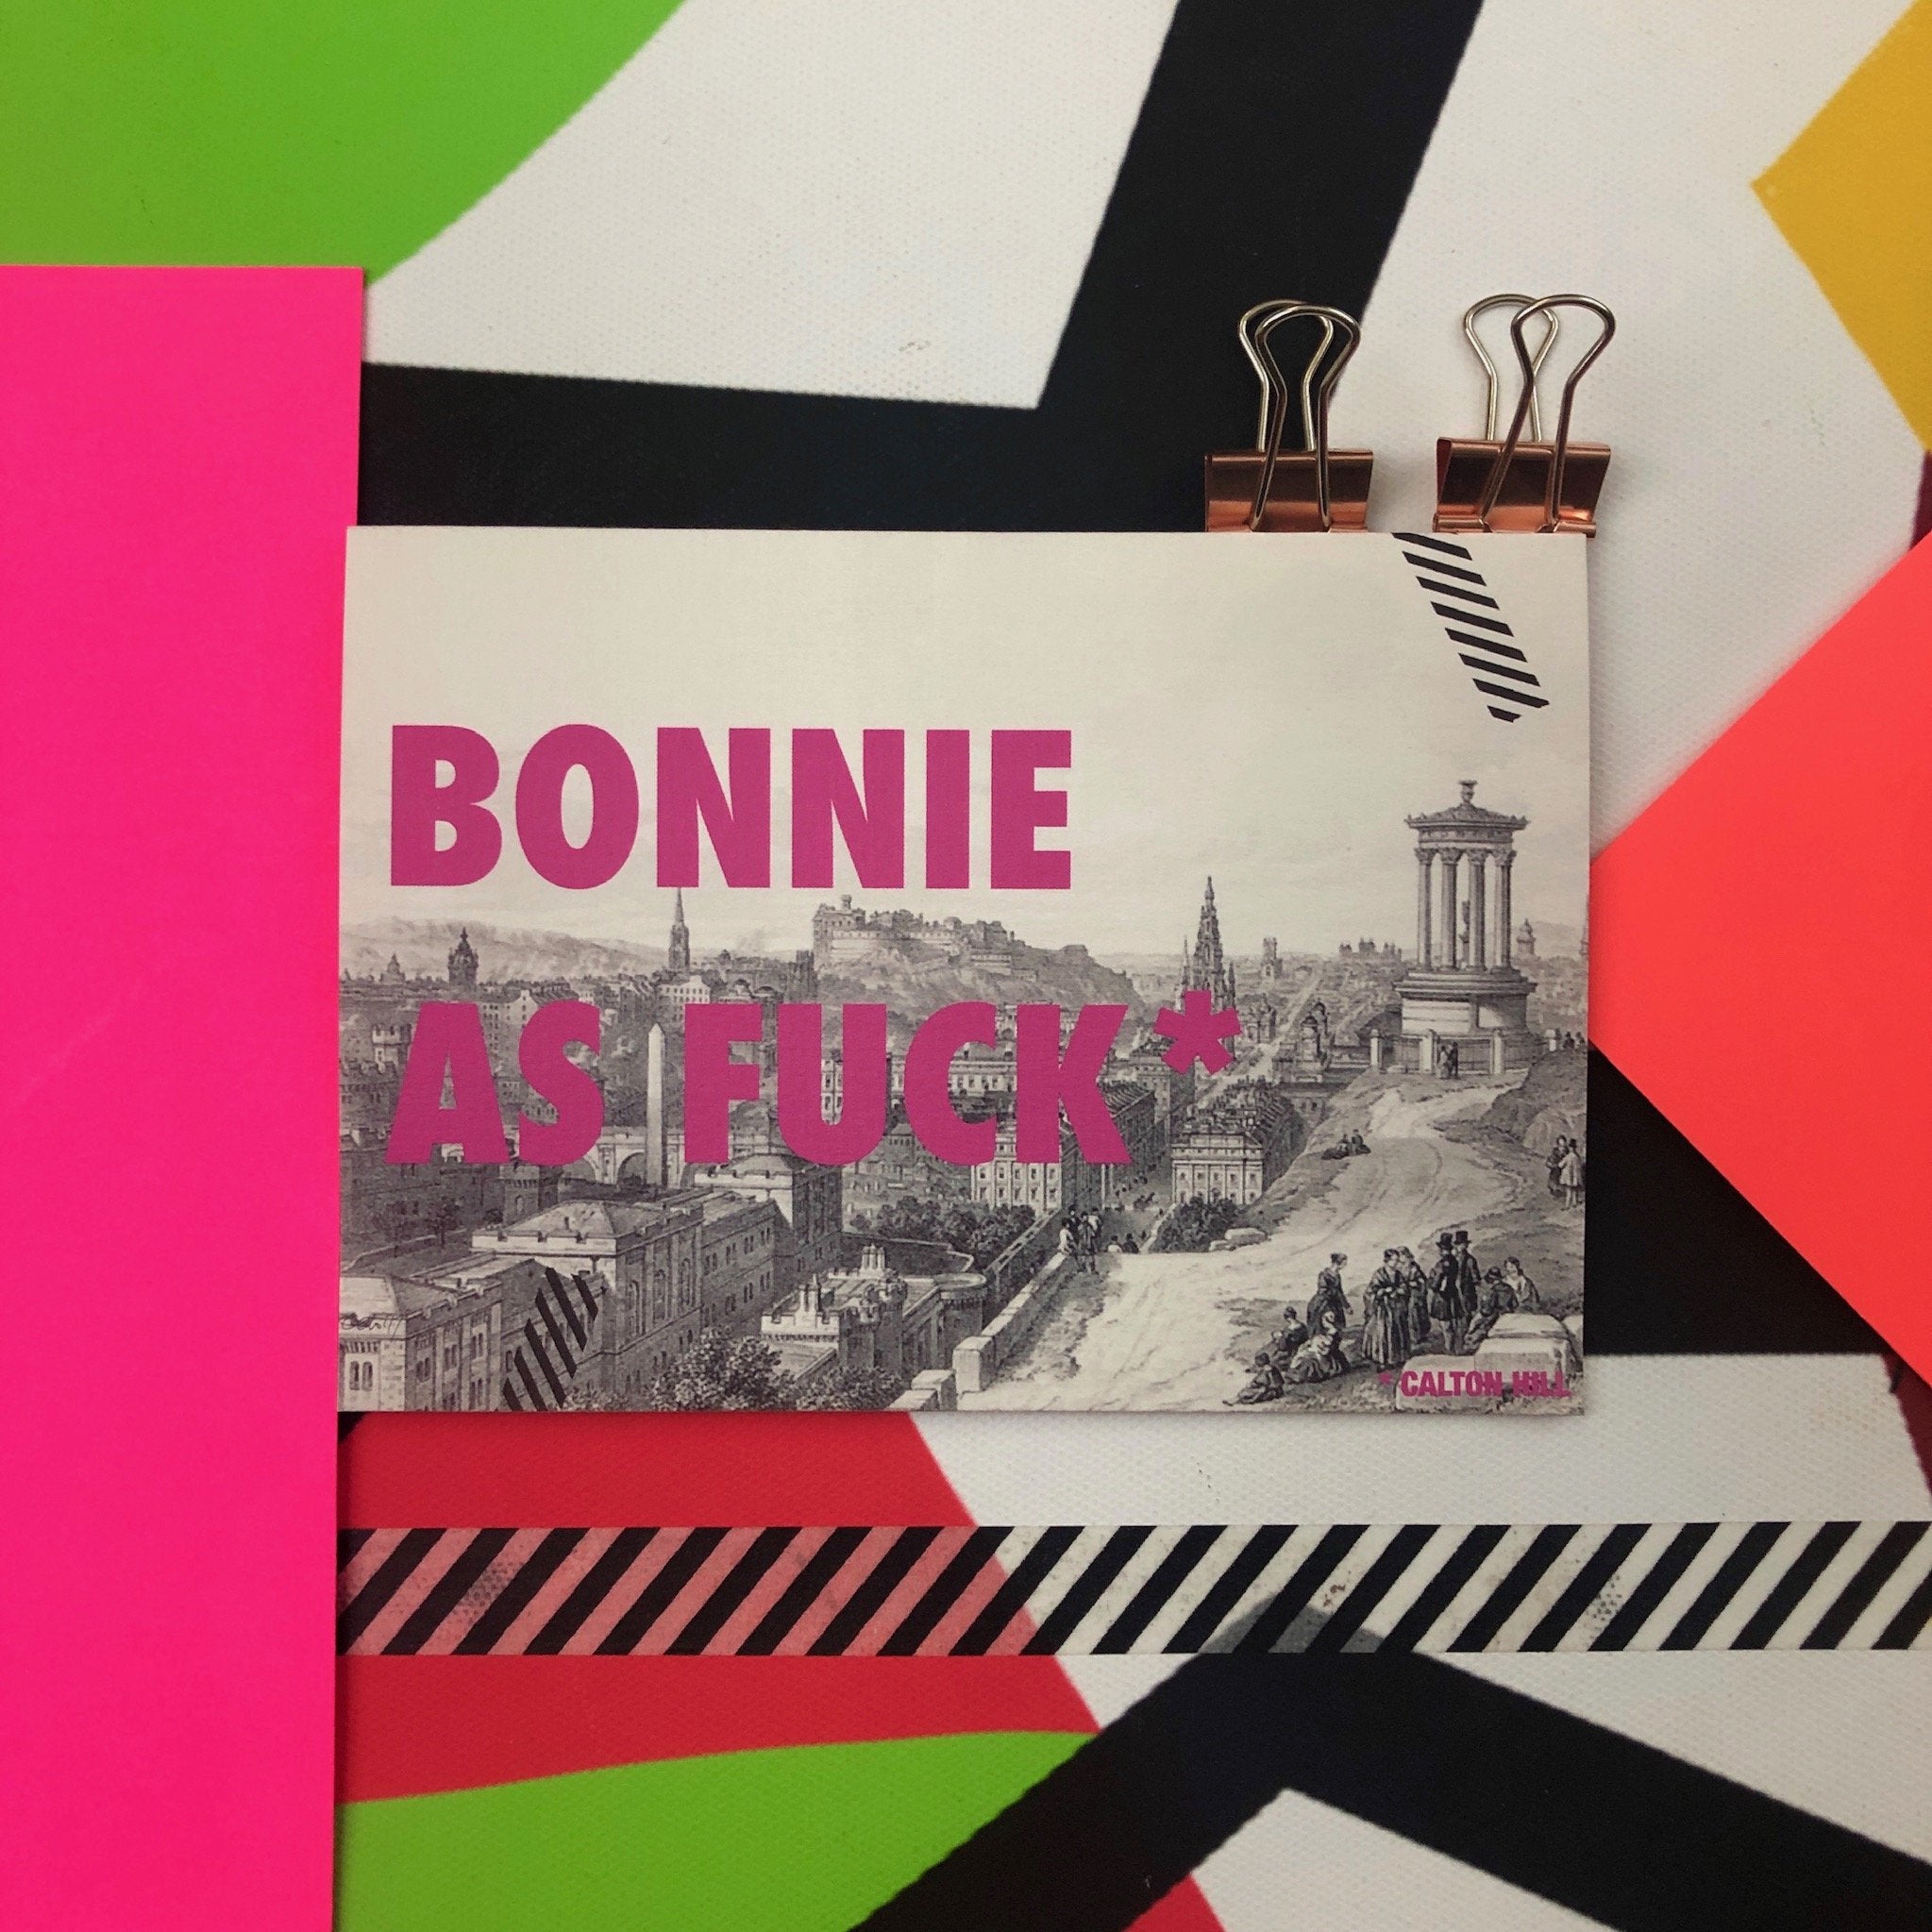 Bonnie Calton Hill Greeting Card